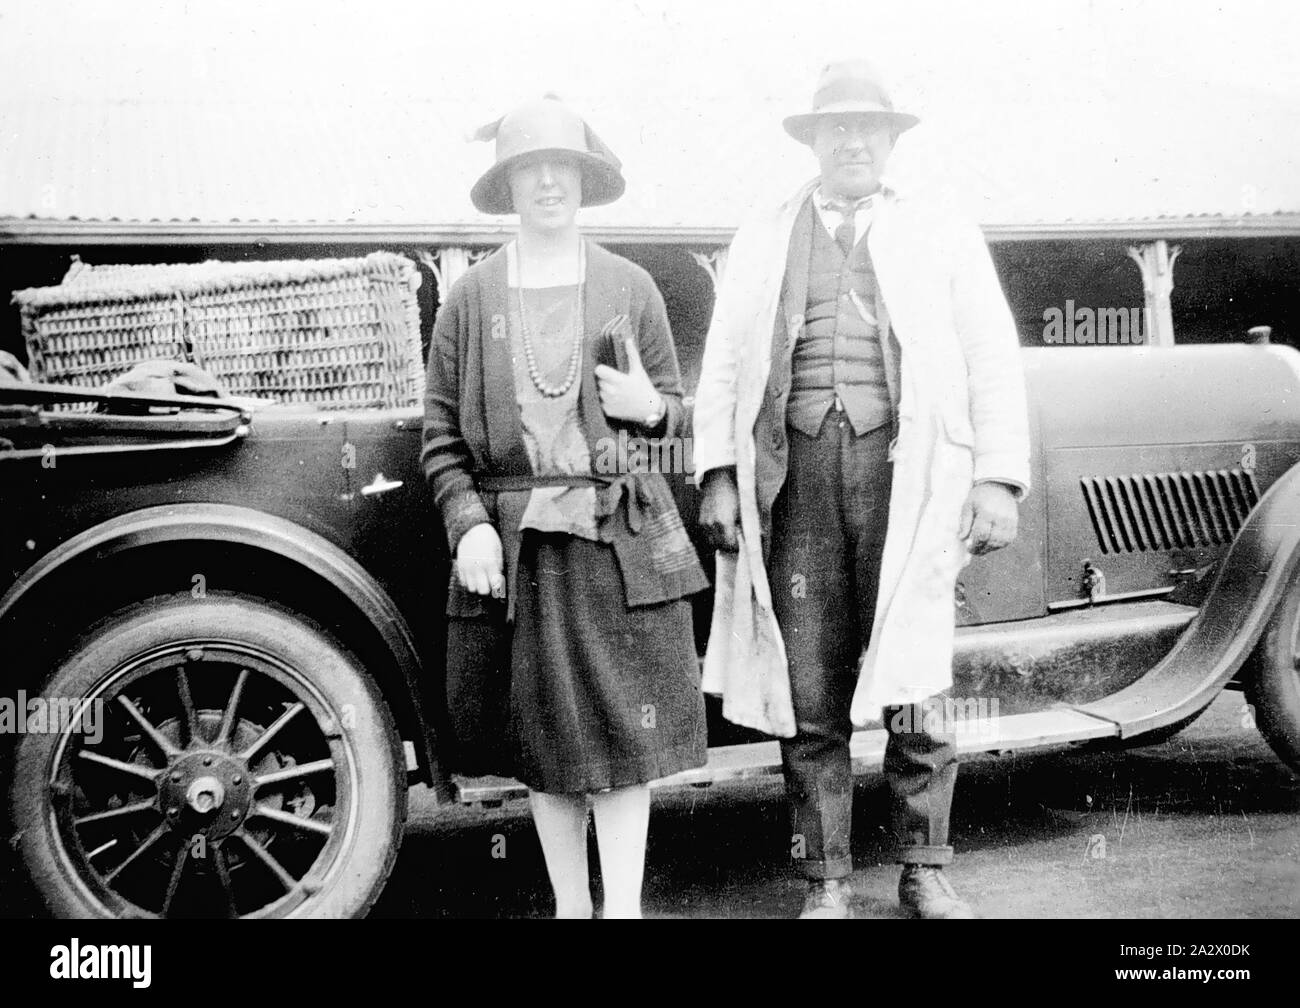 Negativo - Nareen, Victoria, circa 1925, un uomo (identificato come un postino) e una donna in piedi accanto a un'auto. Nel sedile posteriore della vettura è una canna ostacolano. Essi sono sulla strada per Coleraine Foto Stock